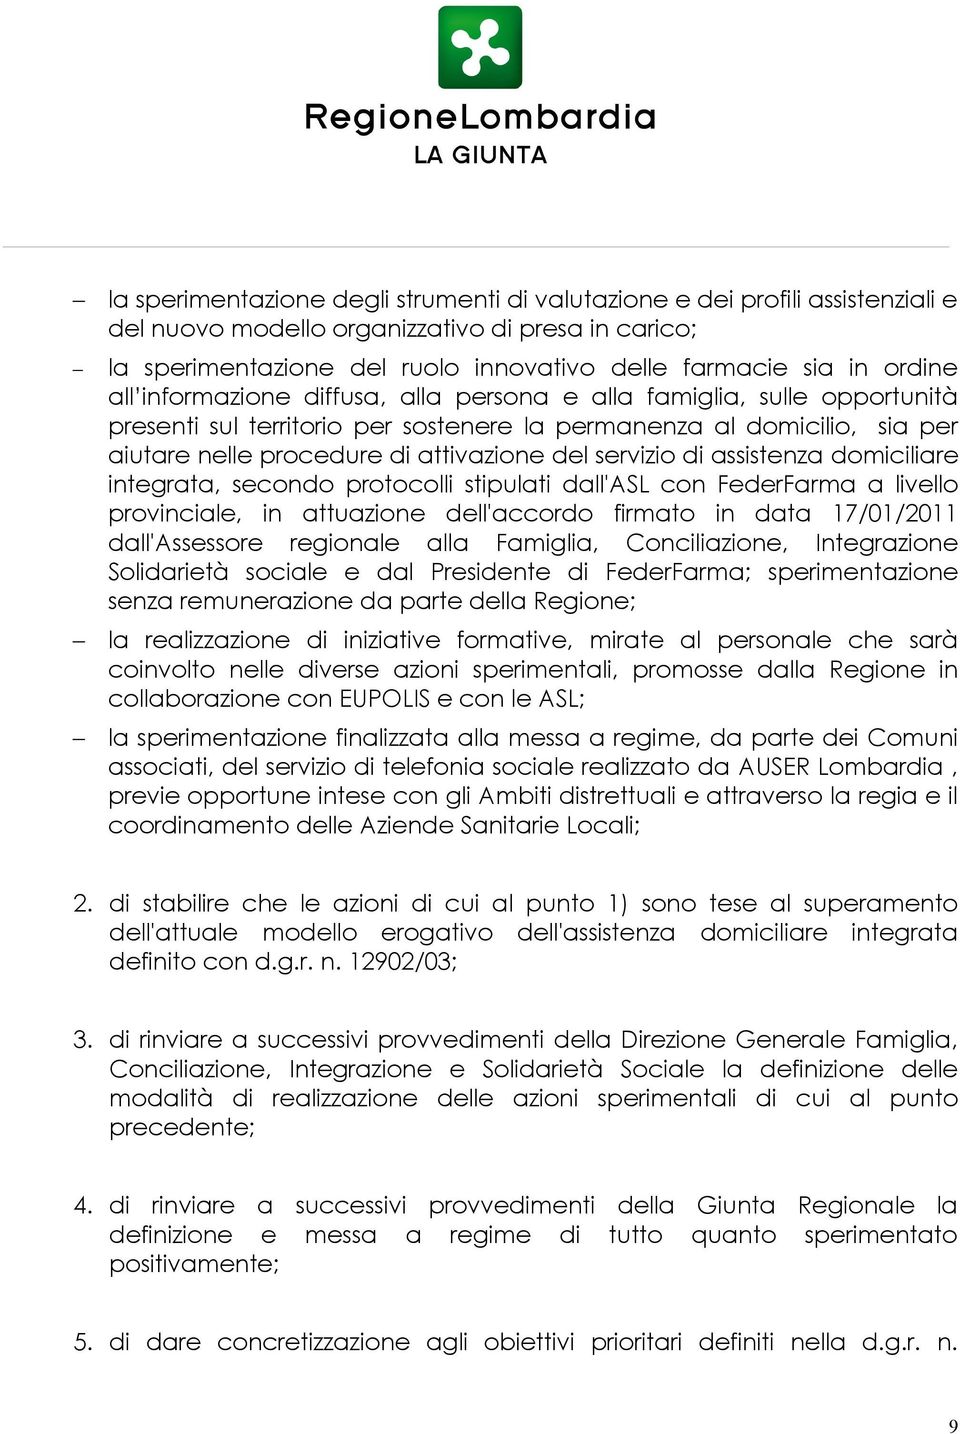 servizio di assistenza domiciliare integrata, secondo protocolli stipulati dall'asl con FederFarma a livello provinciale, in attuazione dell'accordo firmato in data 17/01/2011 dall'assessore